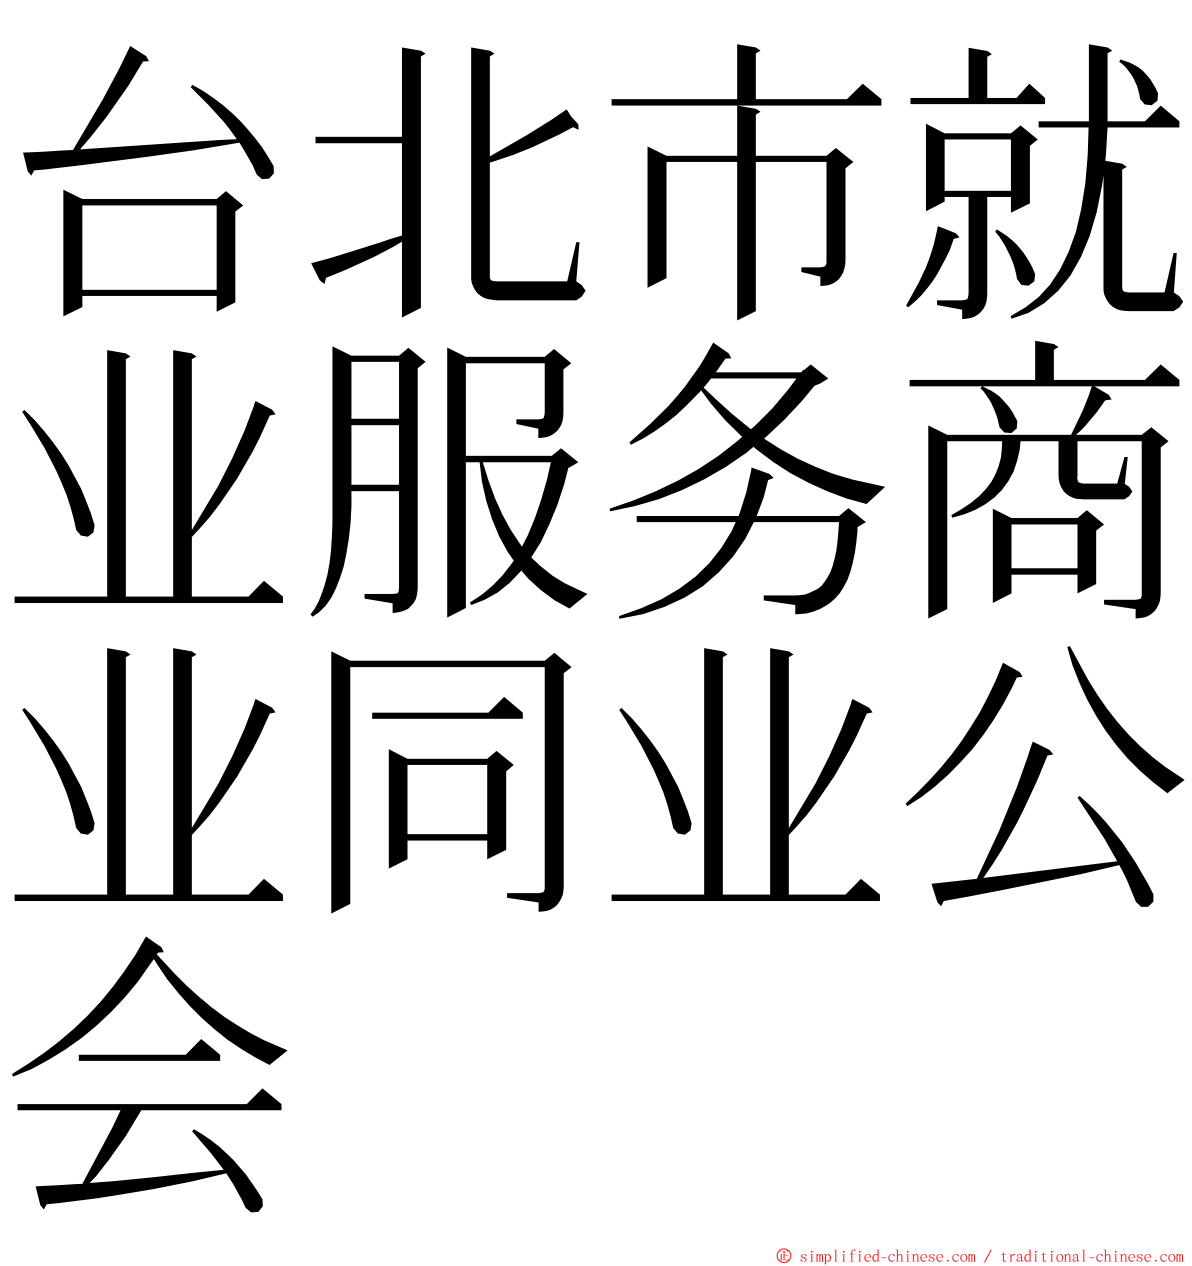 台北市就业服务商业同业公会 ming font